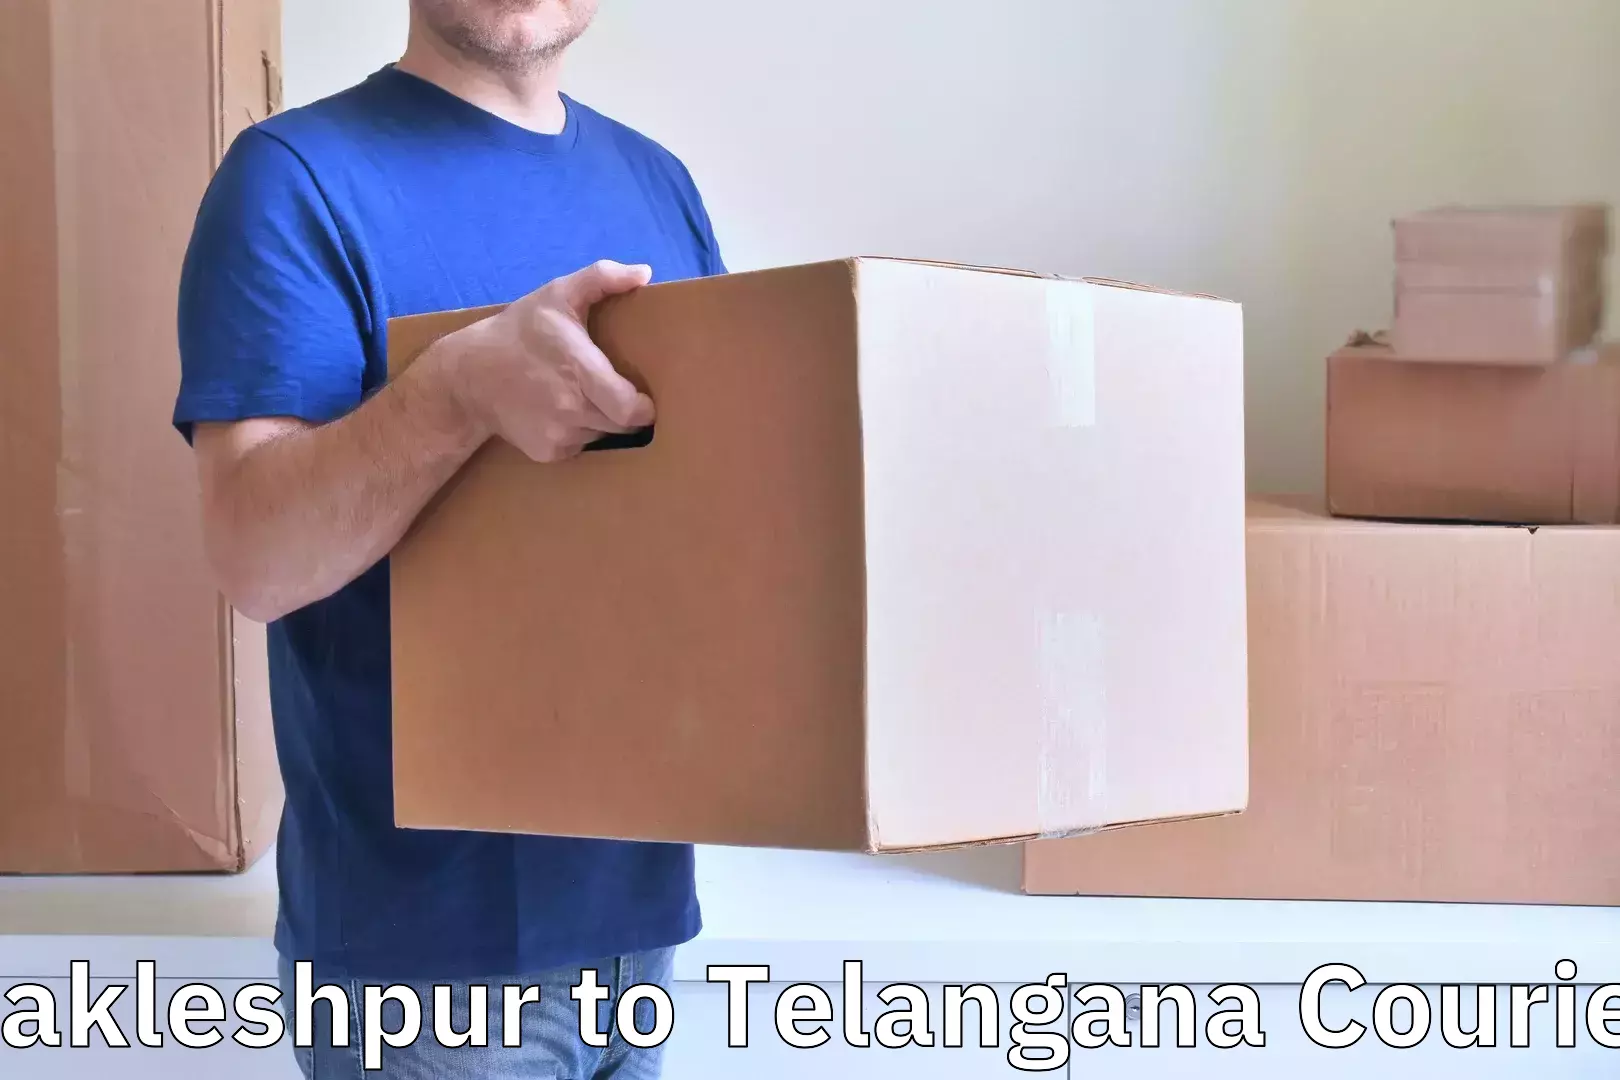 Luggage delivery app Sakleshpur to Jangaon